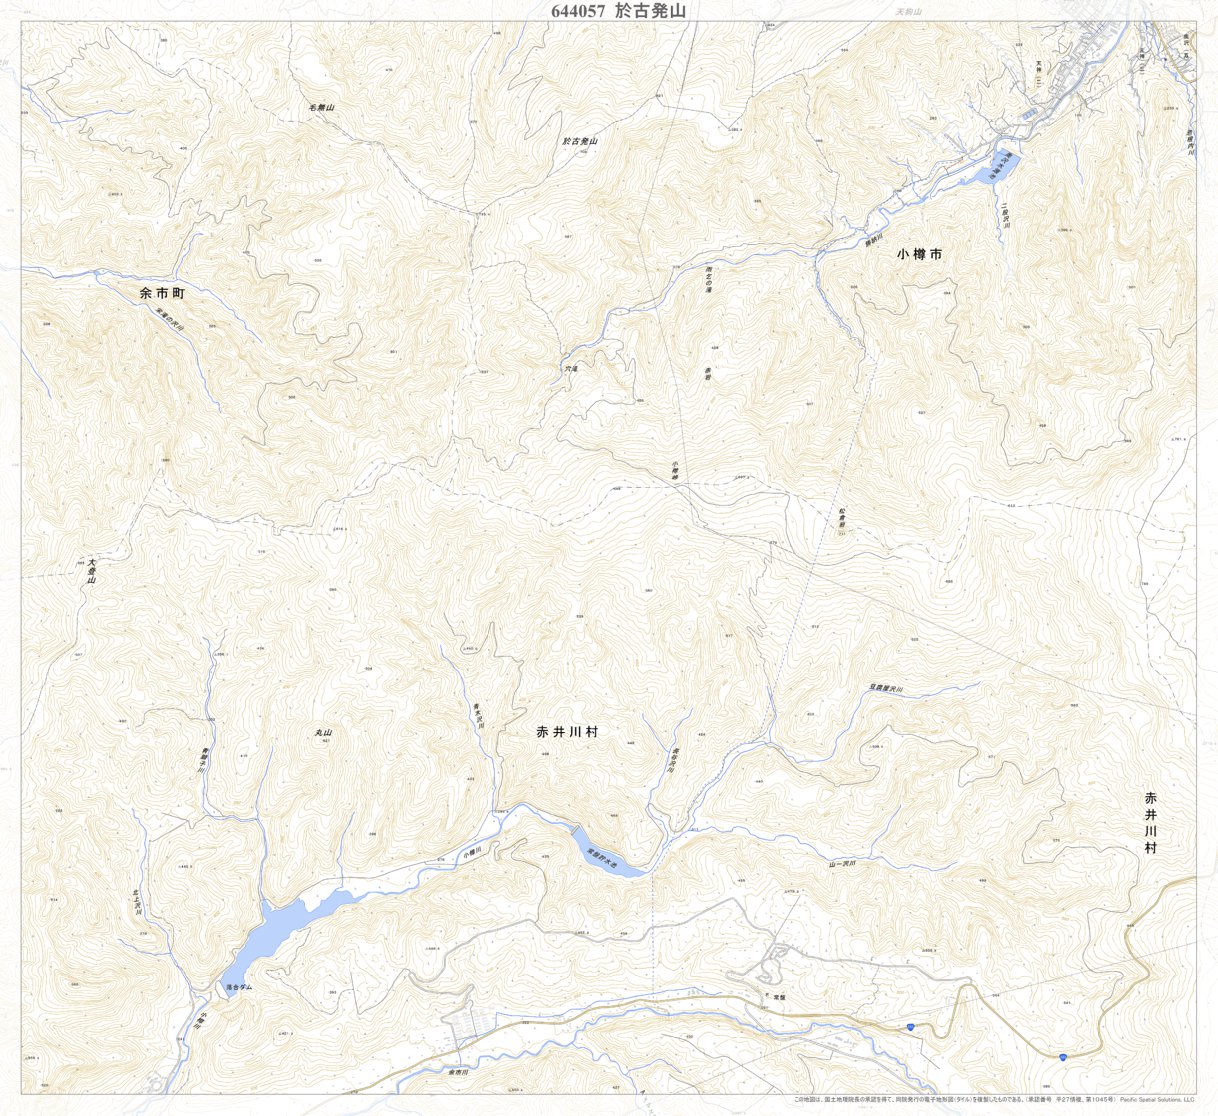 644057 於古発山 （おこはちやま Okohachiyama）, 地形図 Map by 